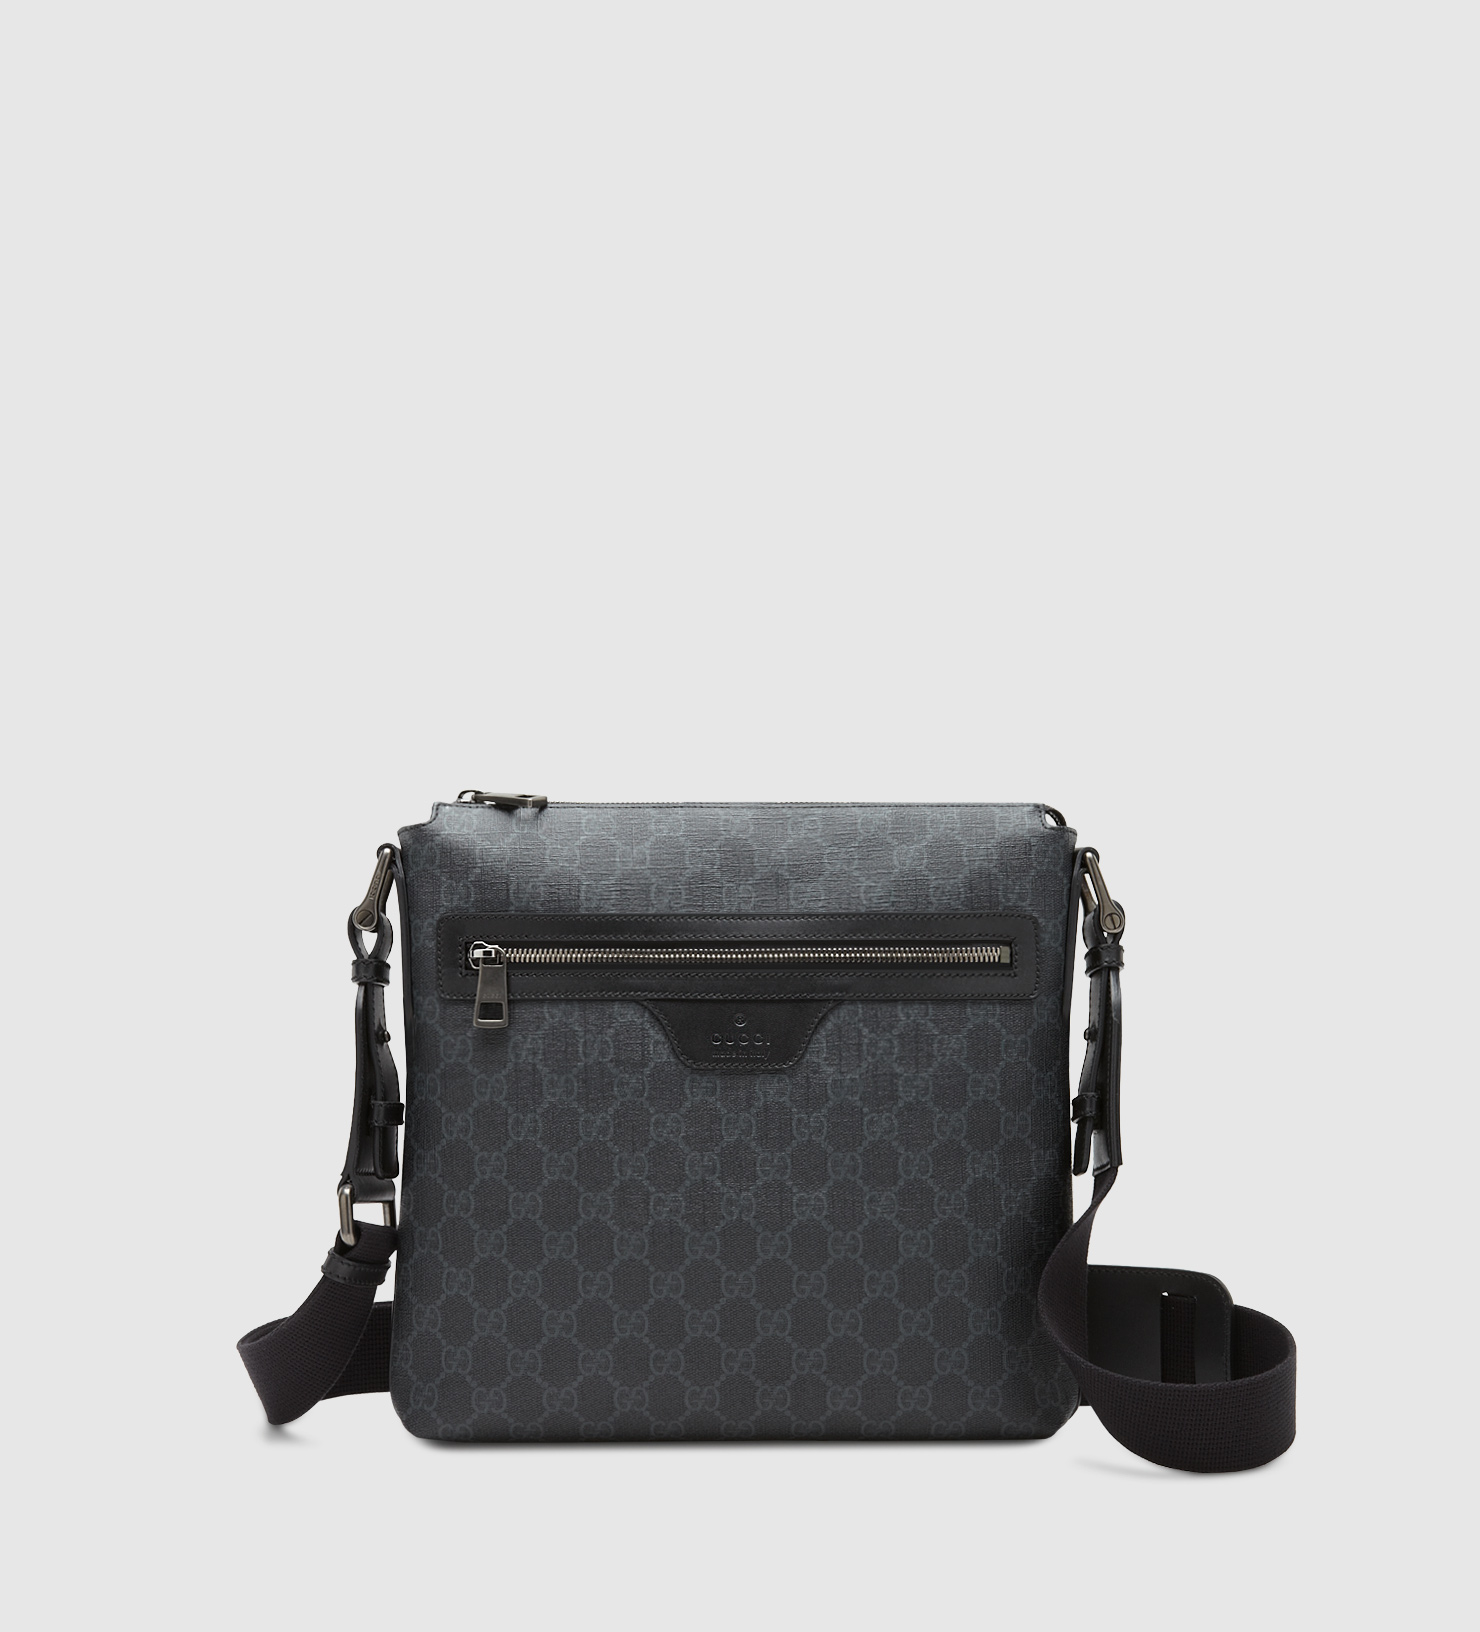 Gucci Gg Supreme Canvas Messenger Bag in Grey (Black) for Men - Lyst